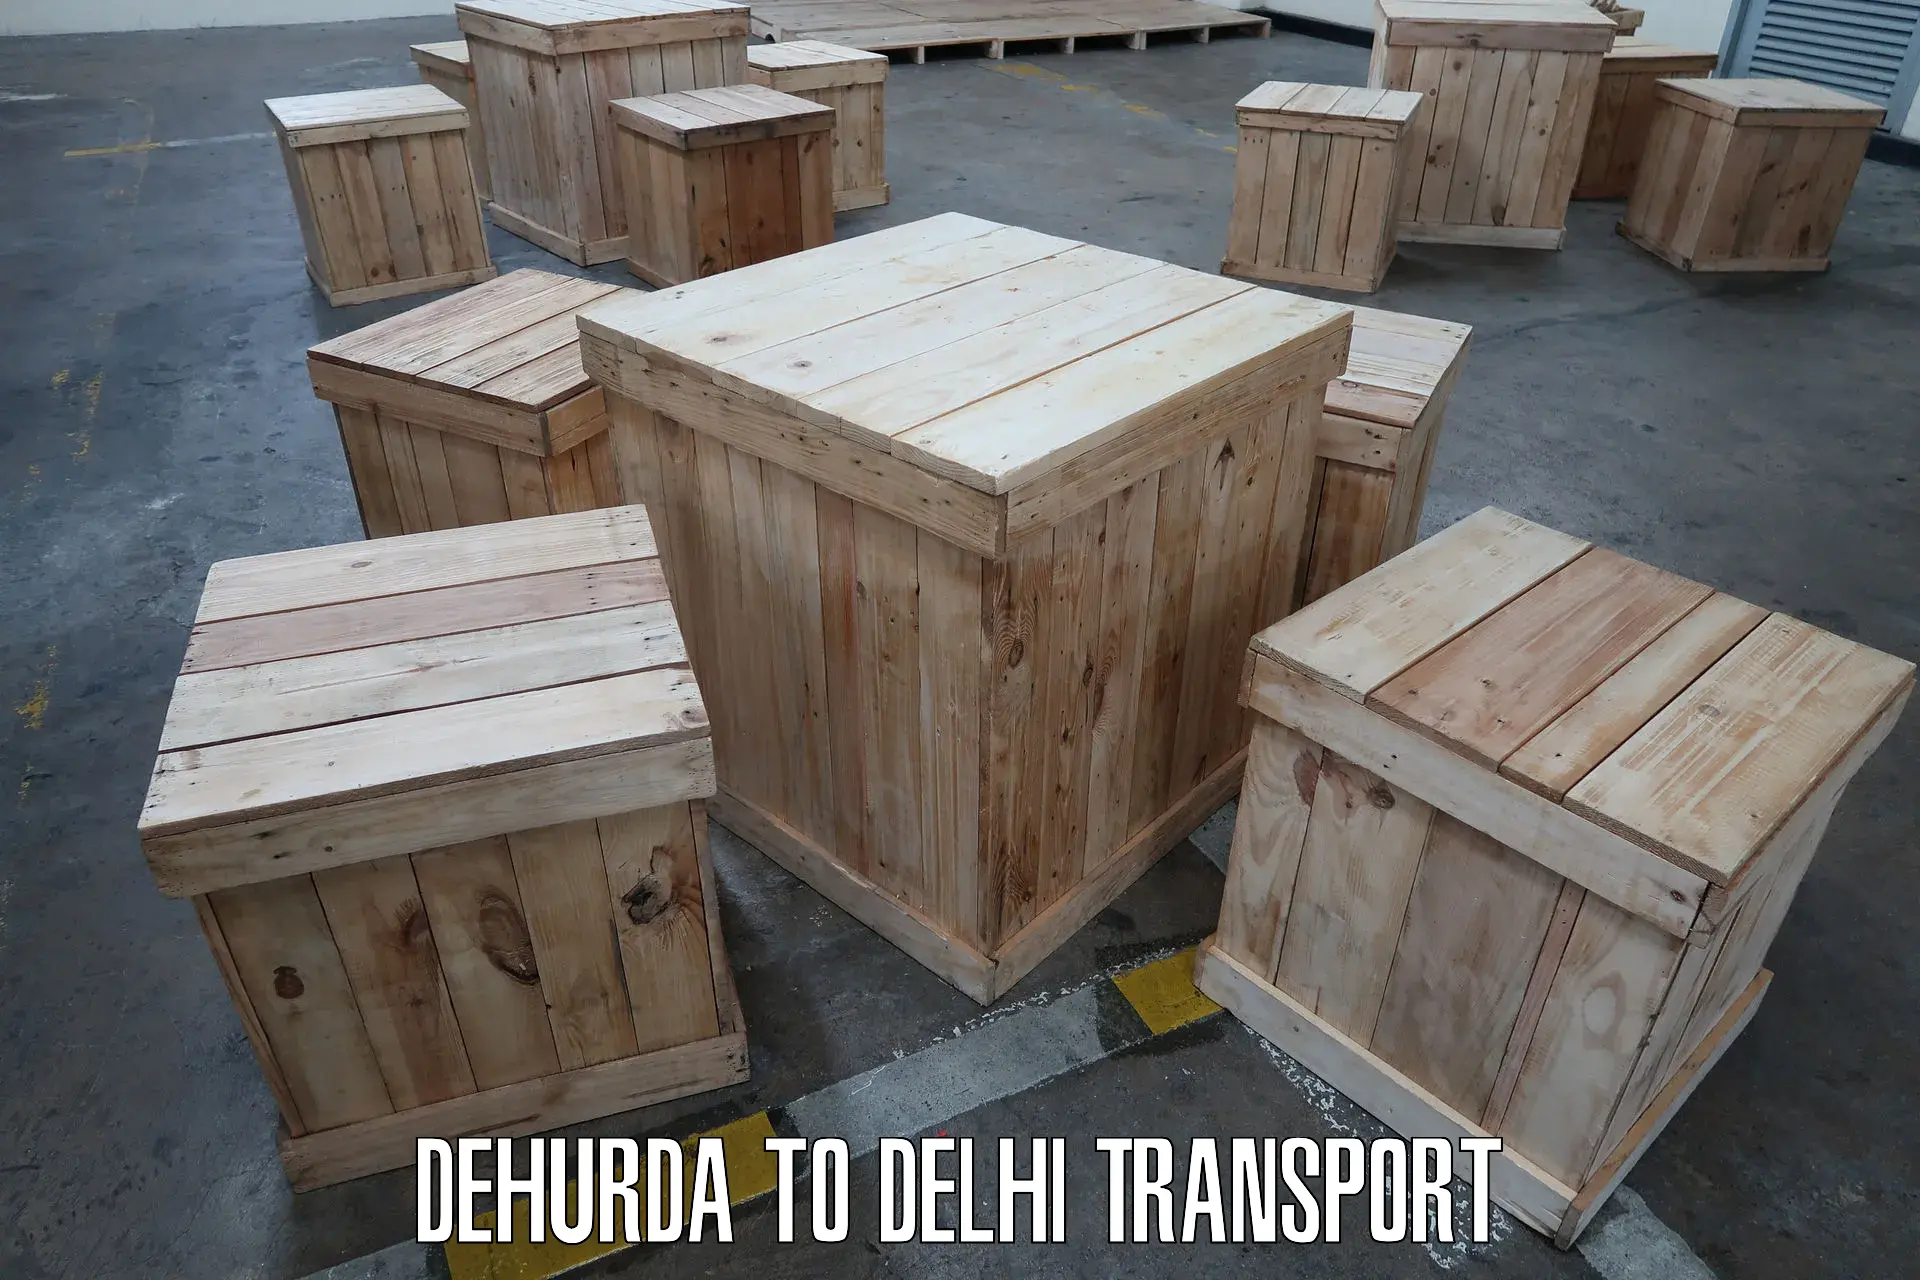 Vehicle courier services in Dehurda to NIT Delhi